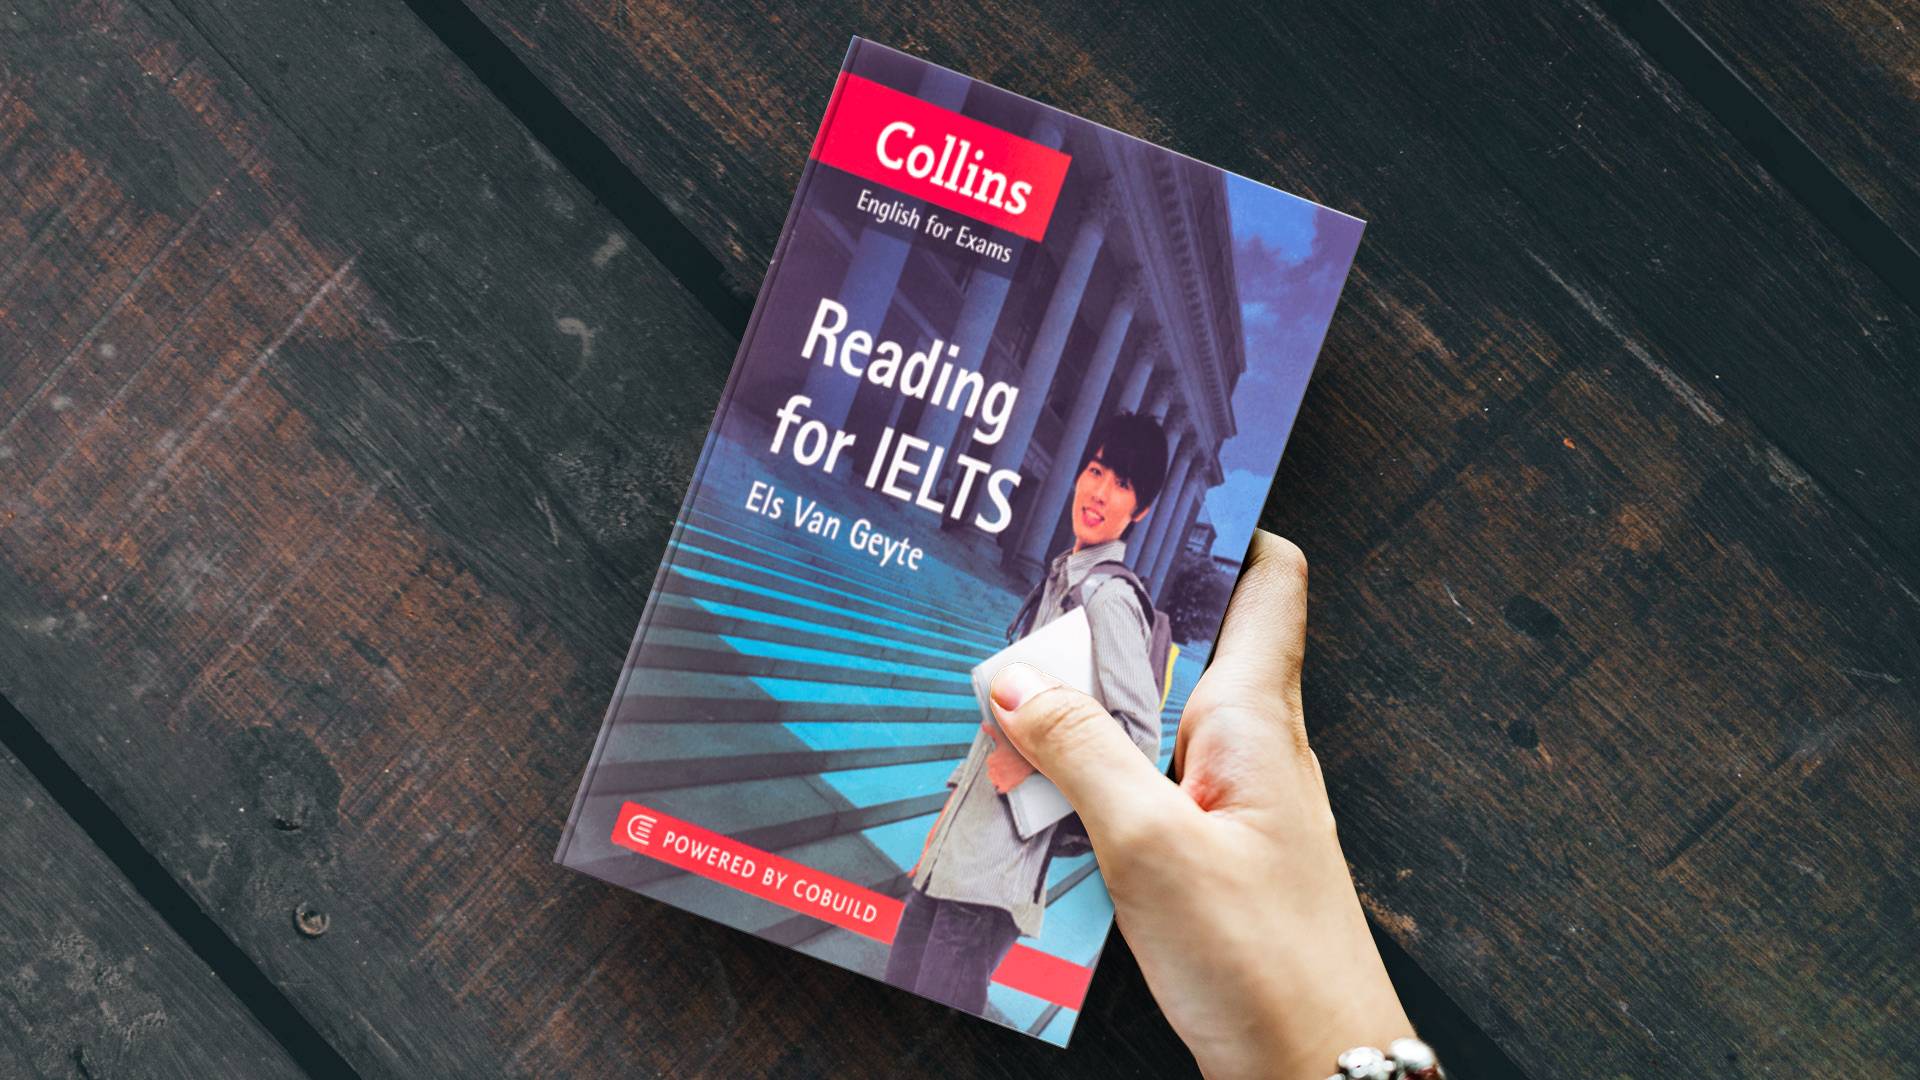 خرید کتاب زبان | کتاب زبان آیلتس | Collins english for exams Reading for Ielts | کالینز ریدینگ برای آیلتس